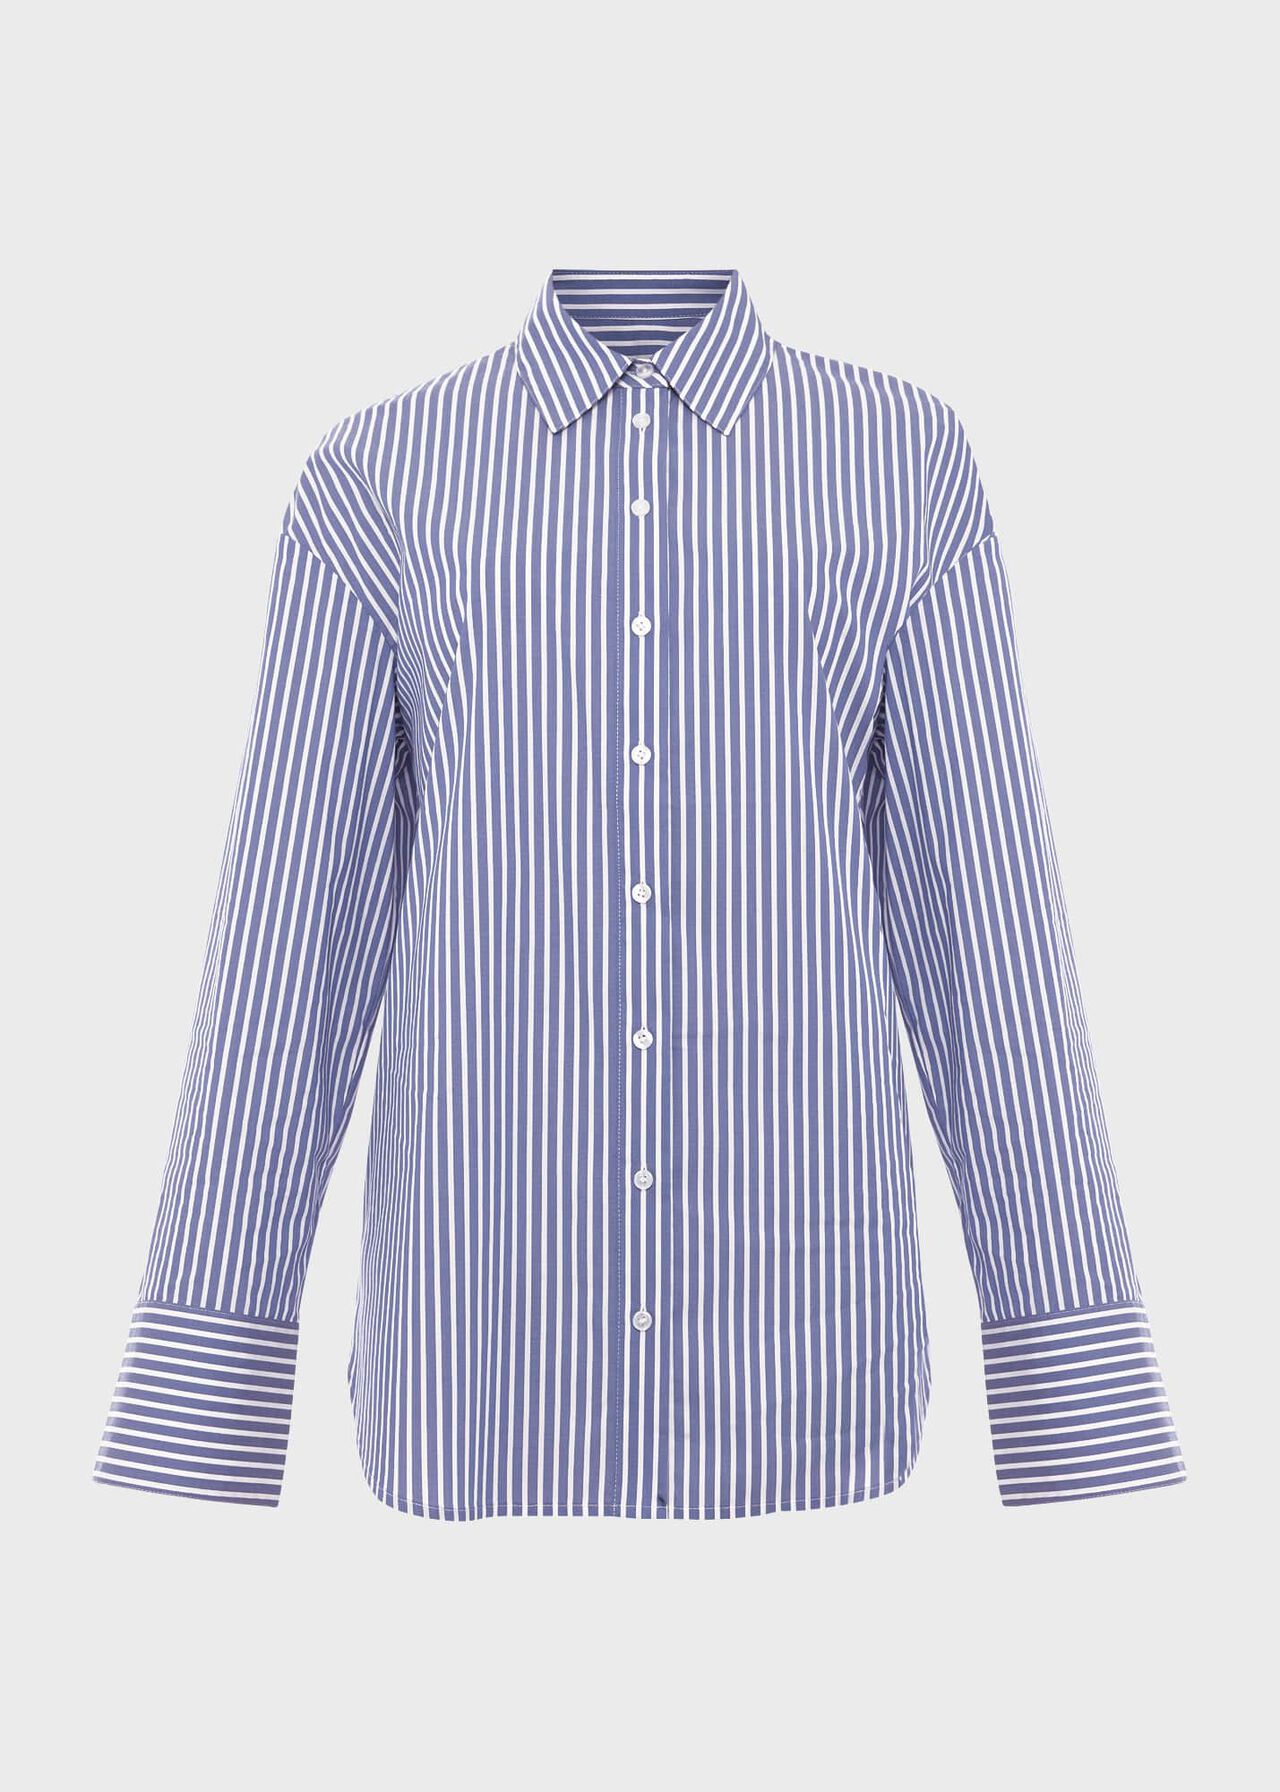 Daventry Shirt, Blue Ivory, hi-res